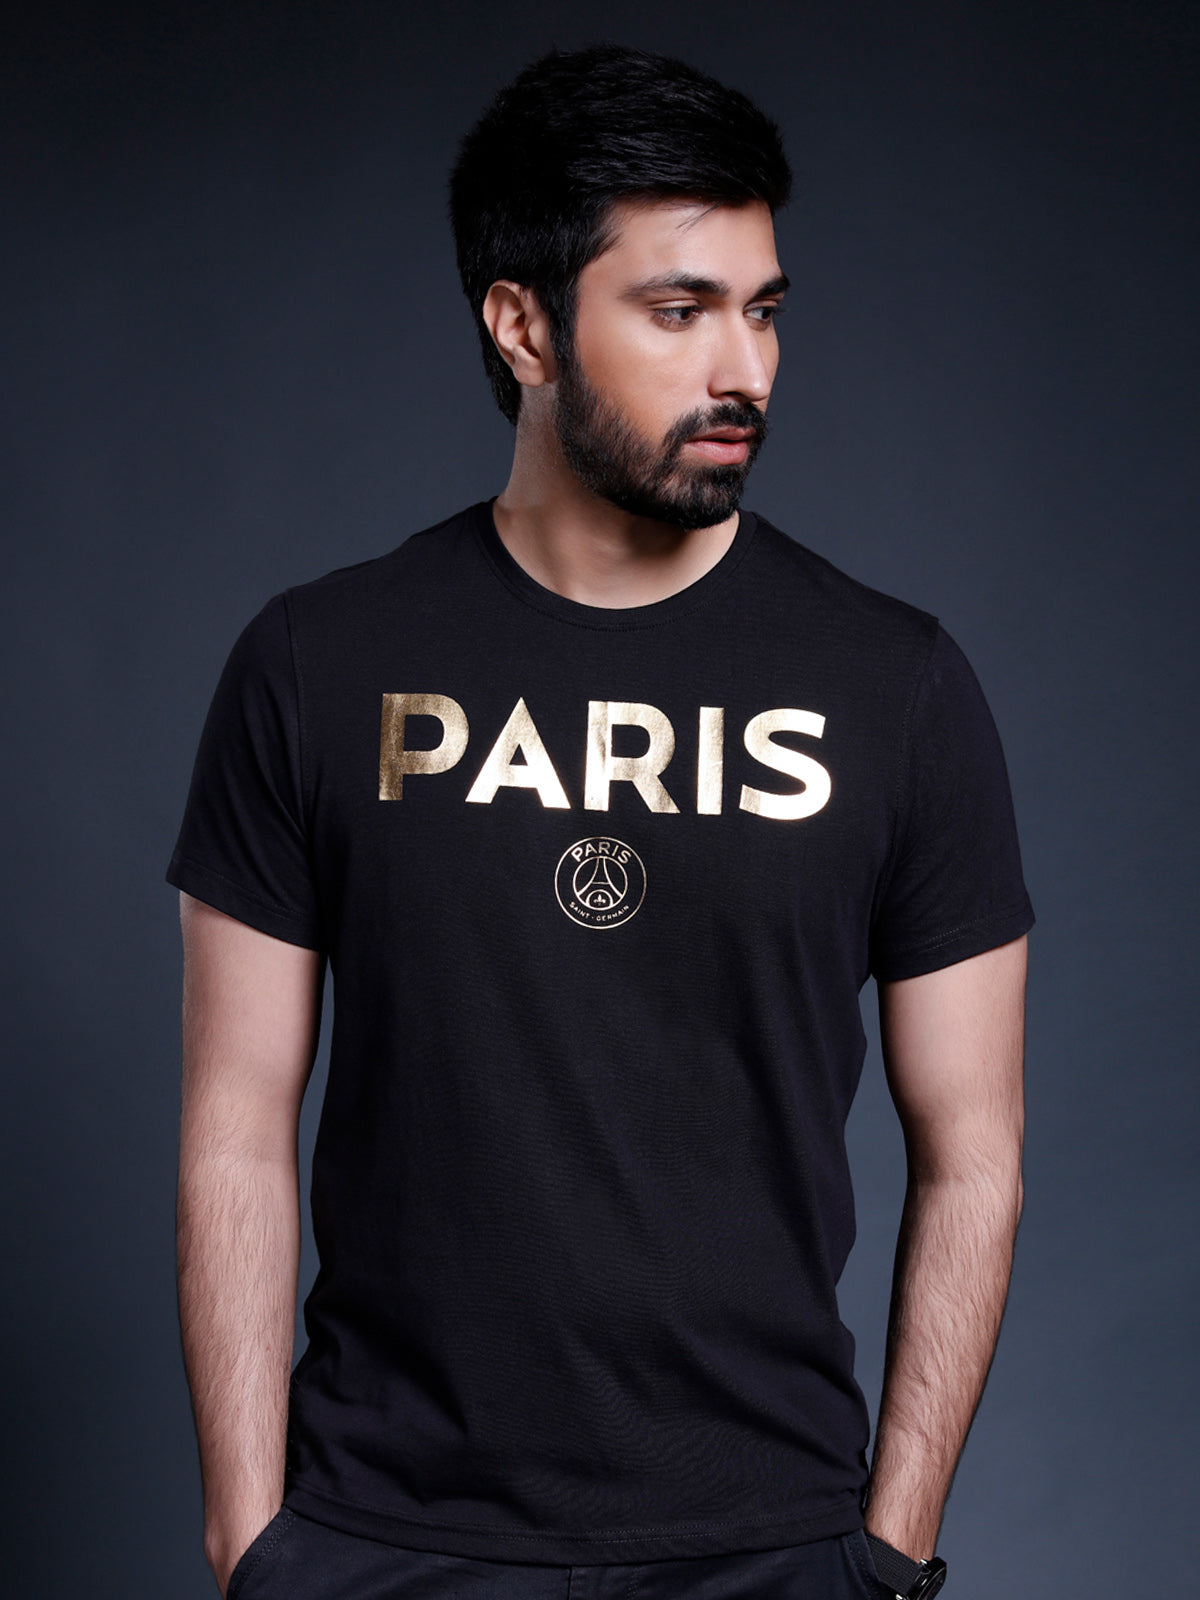 Buy Official Paris Saint-Germain Online – Shop The